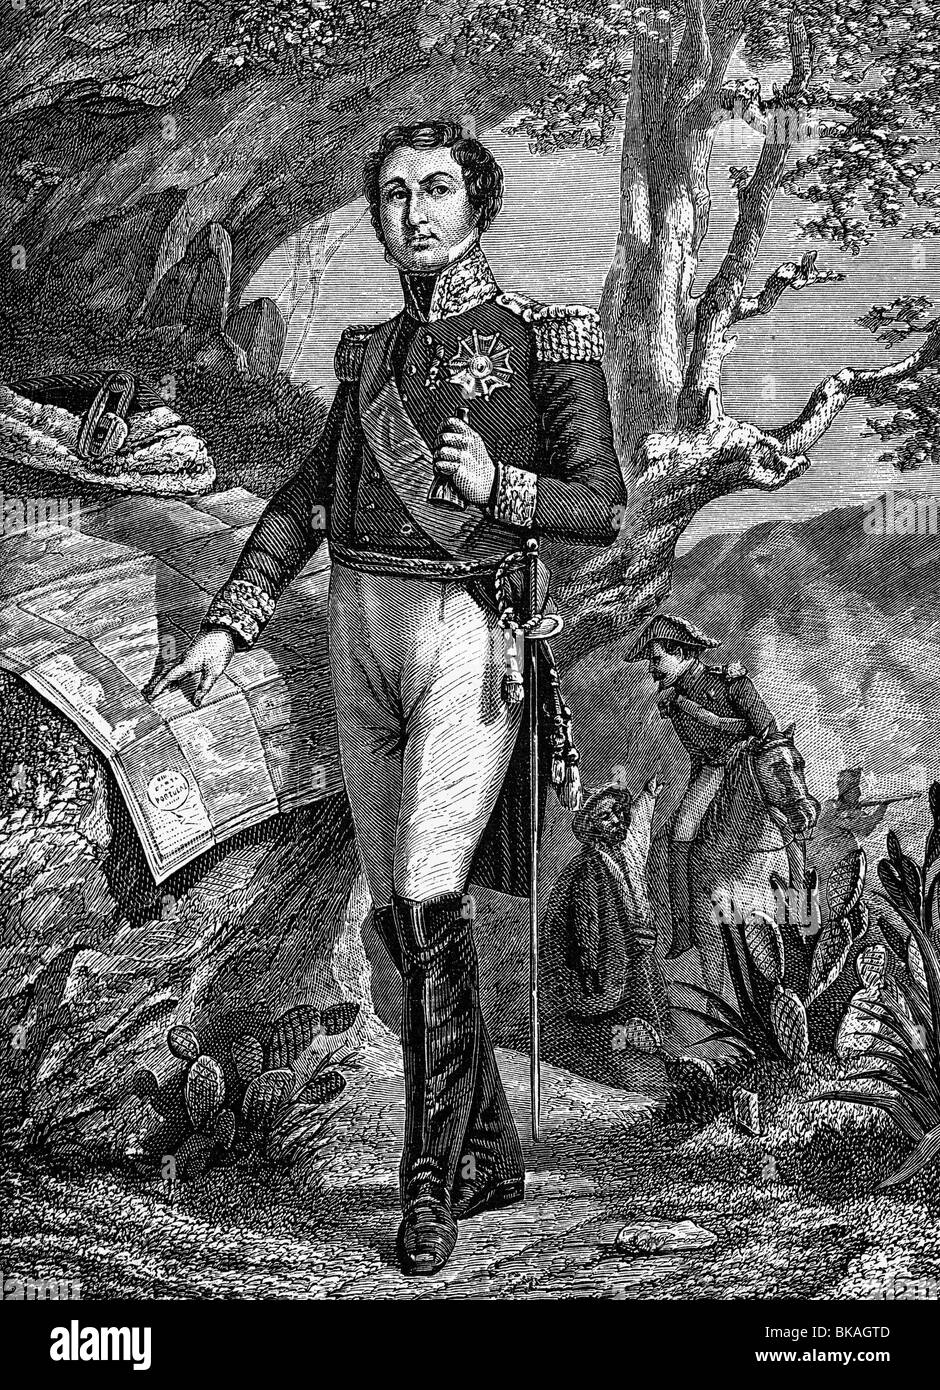 Soult, Nicolas-Jean-de-Dieu, 29.3.604 - 26.11.1851, französischer General und Politiker, volle Länge, Holzgravur, 19. Jahrhundert, Stockfoto